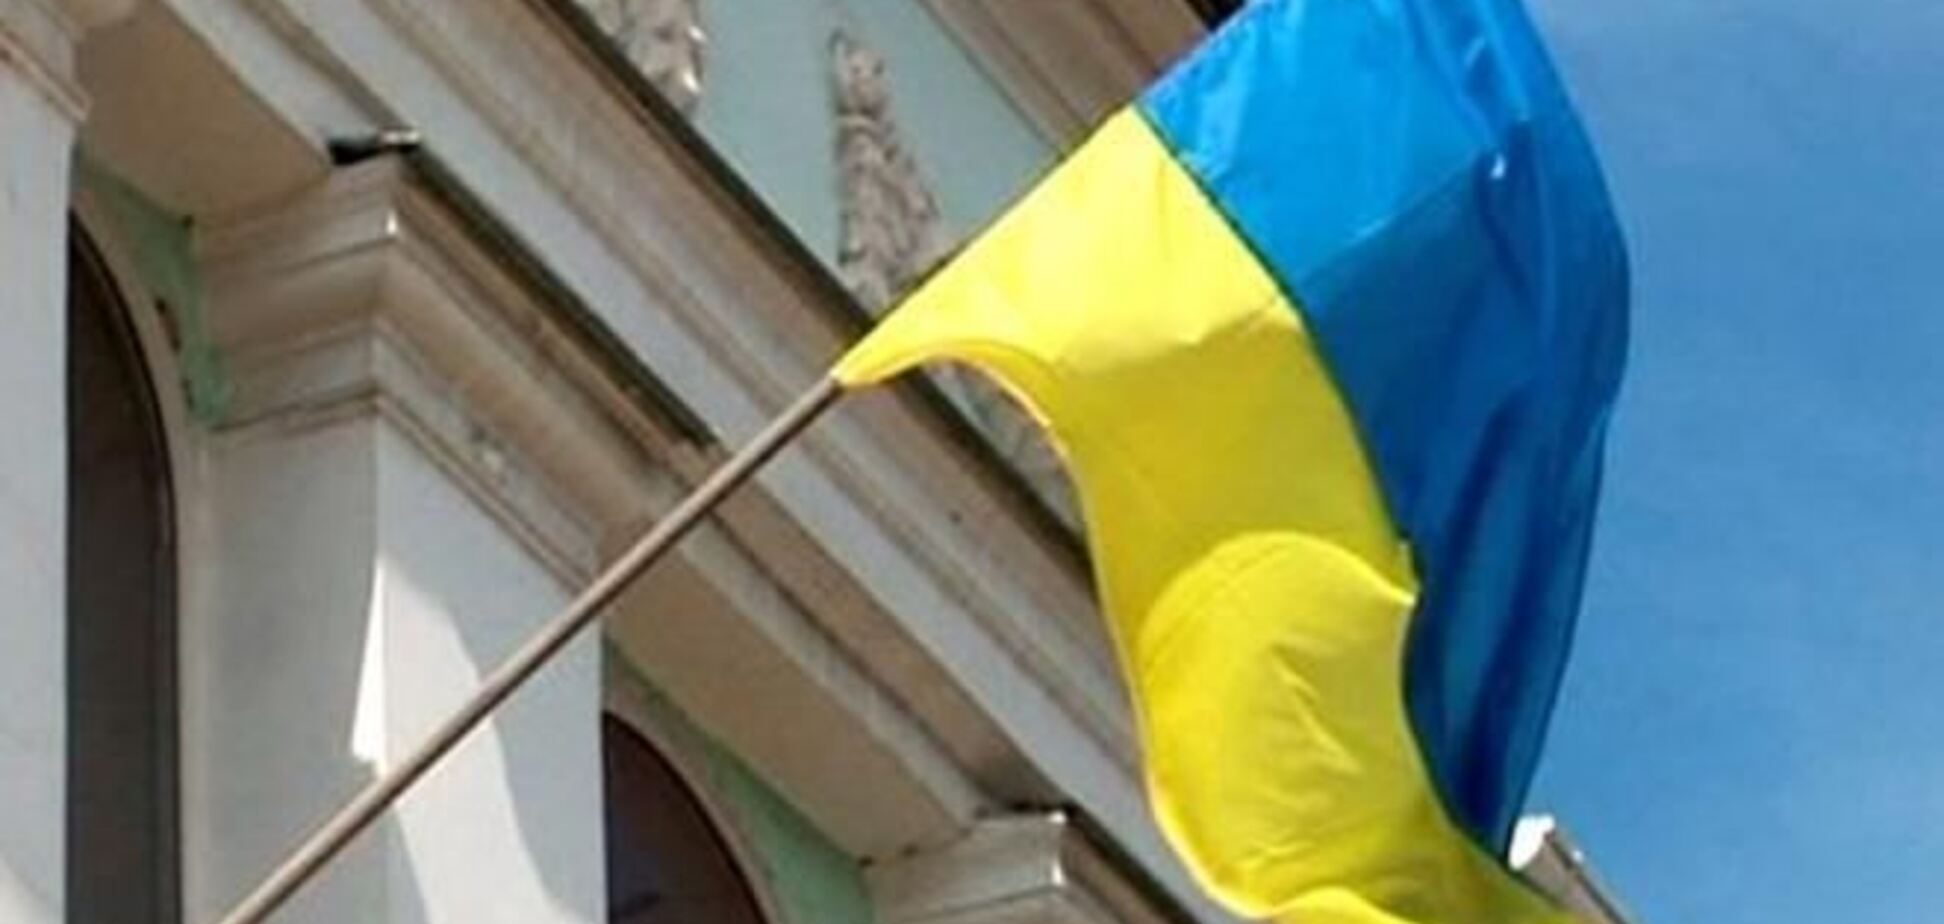 Появившийся на здании Меджлиса флаг Украины 'переполошил' правоохранителей